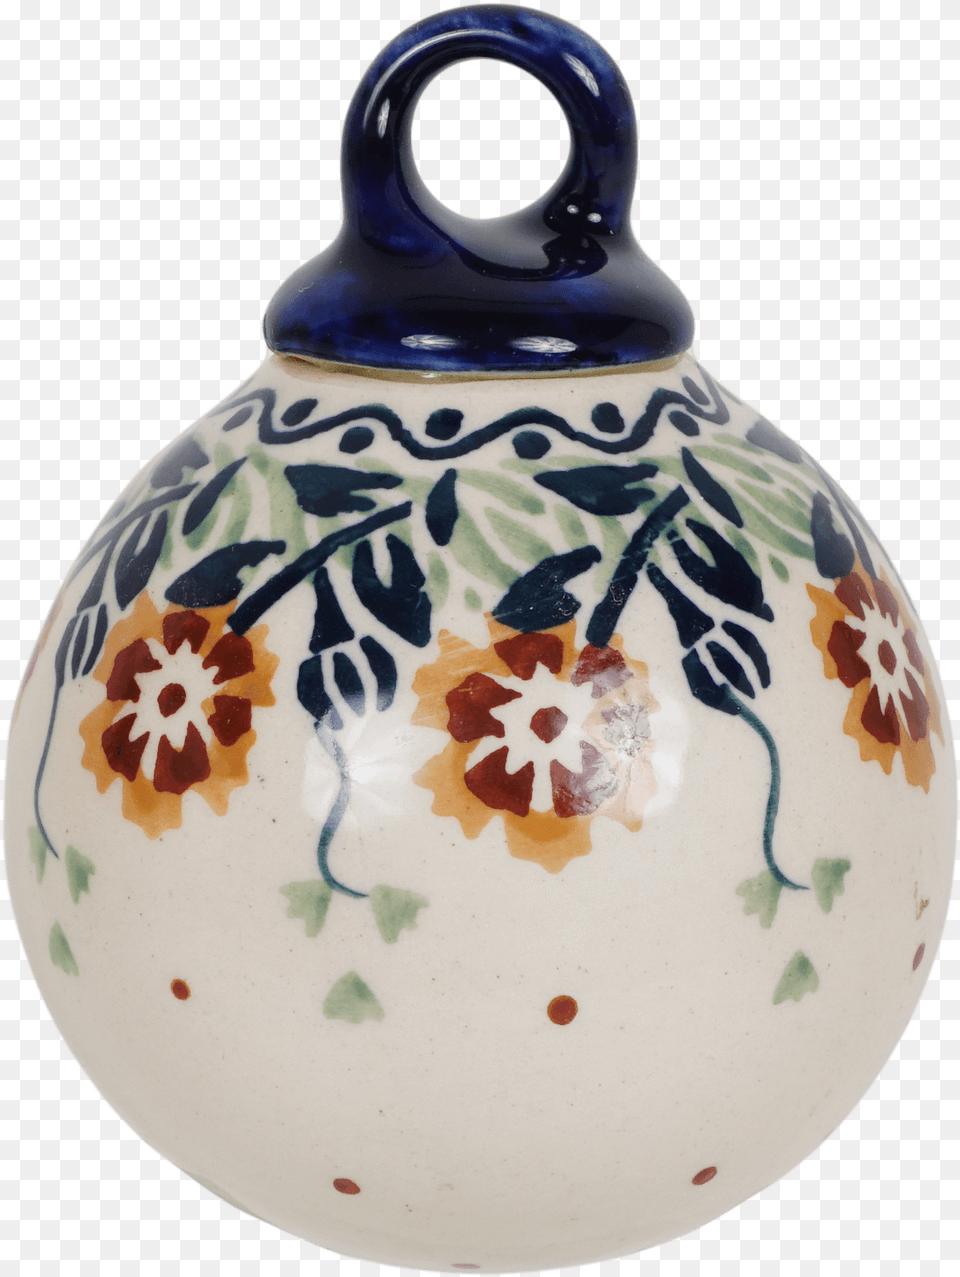 Ceramic, Art, Porcelain, Pottery, Jar Free Png Download